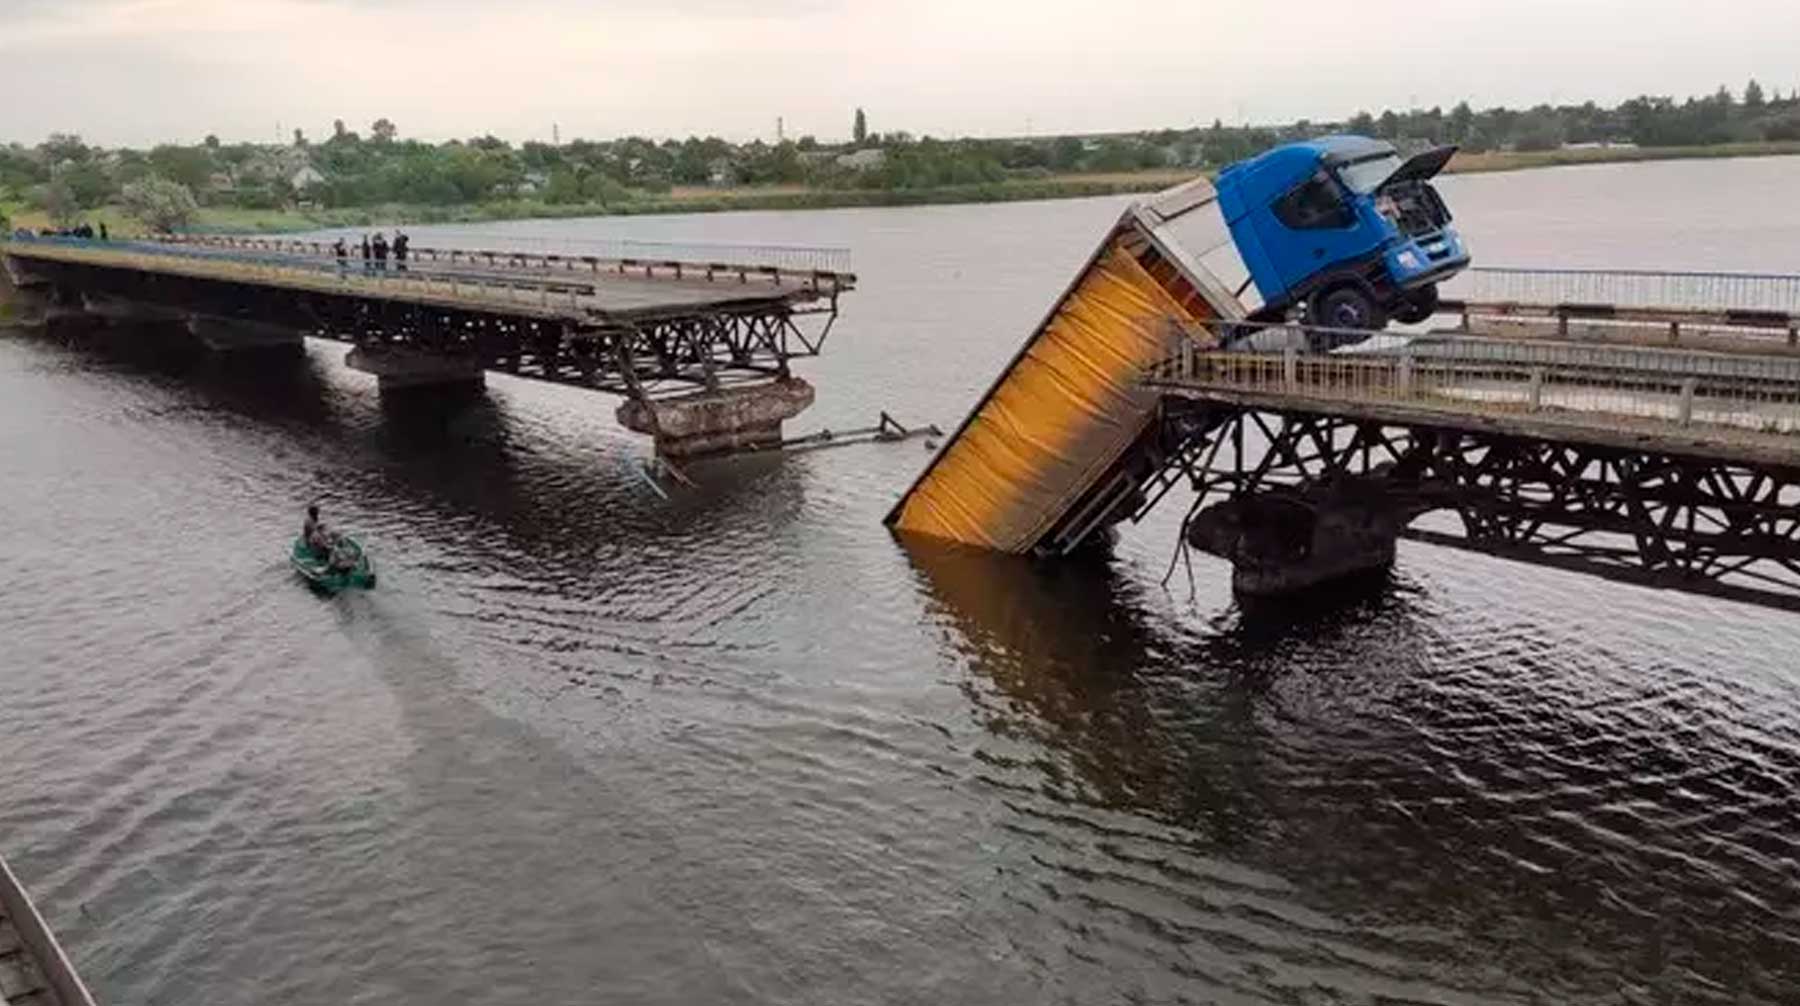 Украинский лидер пообещал найти три миллиарда долларов, чтобы привести в порядок все мосты страны Фото: © nikopolnews